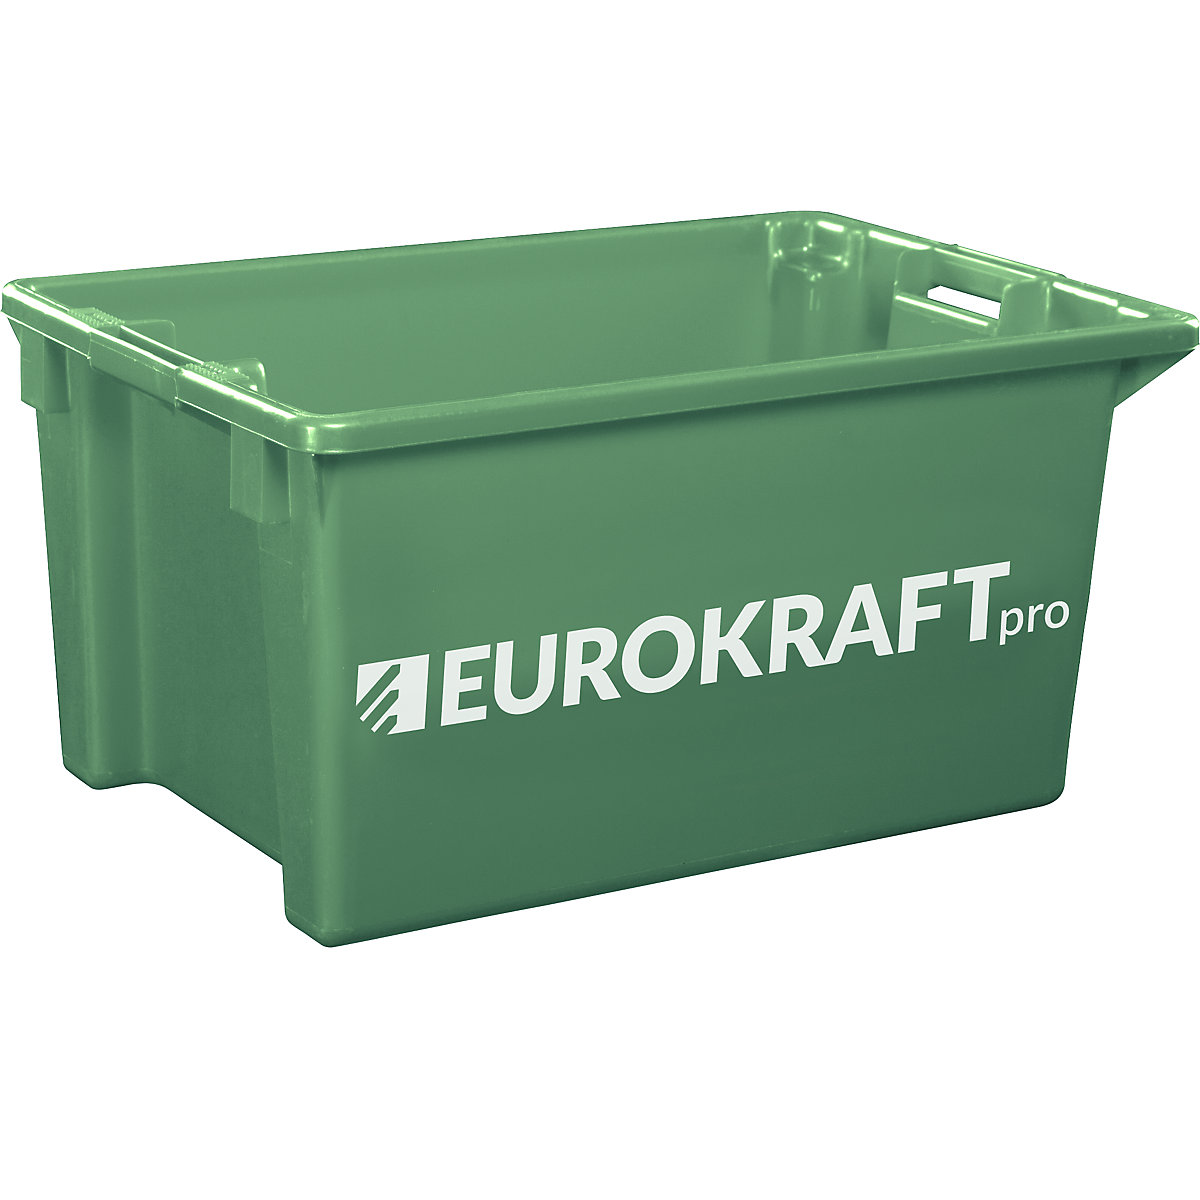 EUROKRAFTpro Drehstapelbehälter aus lebensmittelechtem Polypropylen, Inhalt 70 Liter, VE 2 Stk, Wände und Boden geschlossen, grün